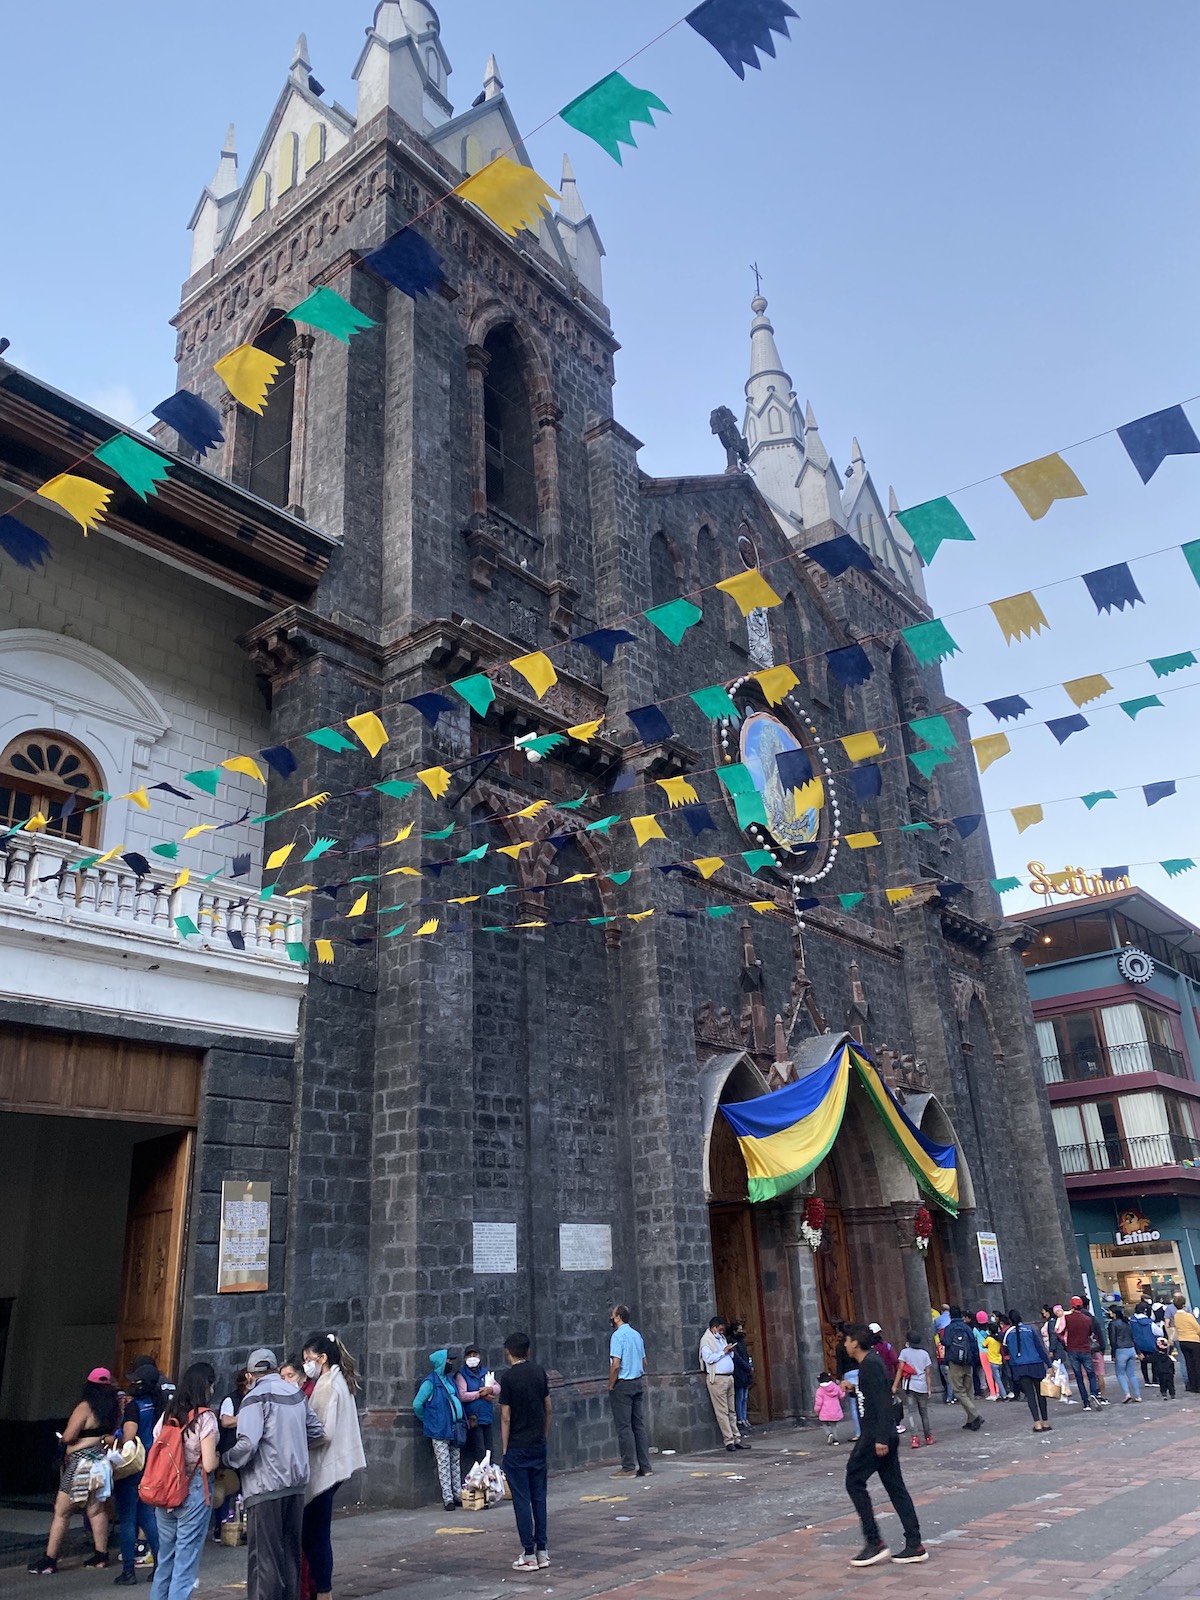 Views of Banos, Ecuador in downtown